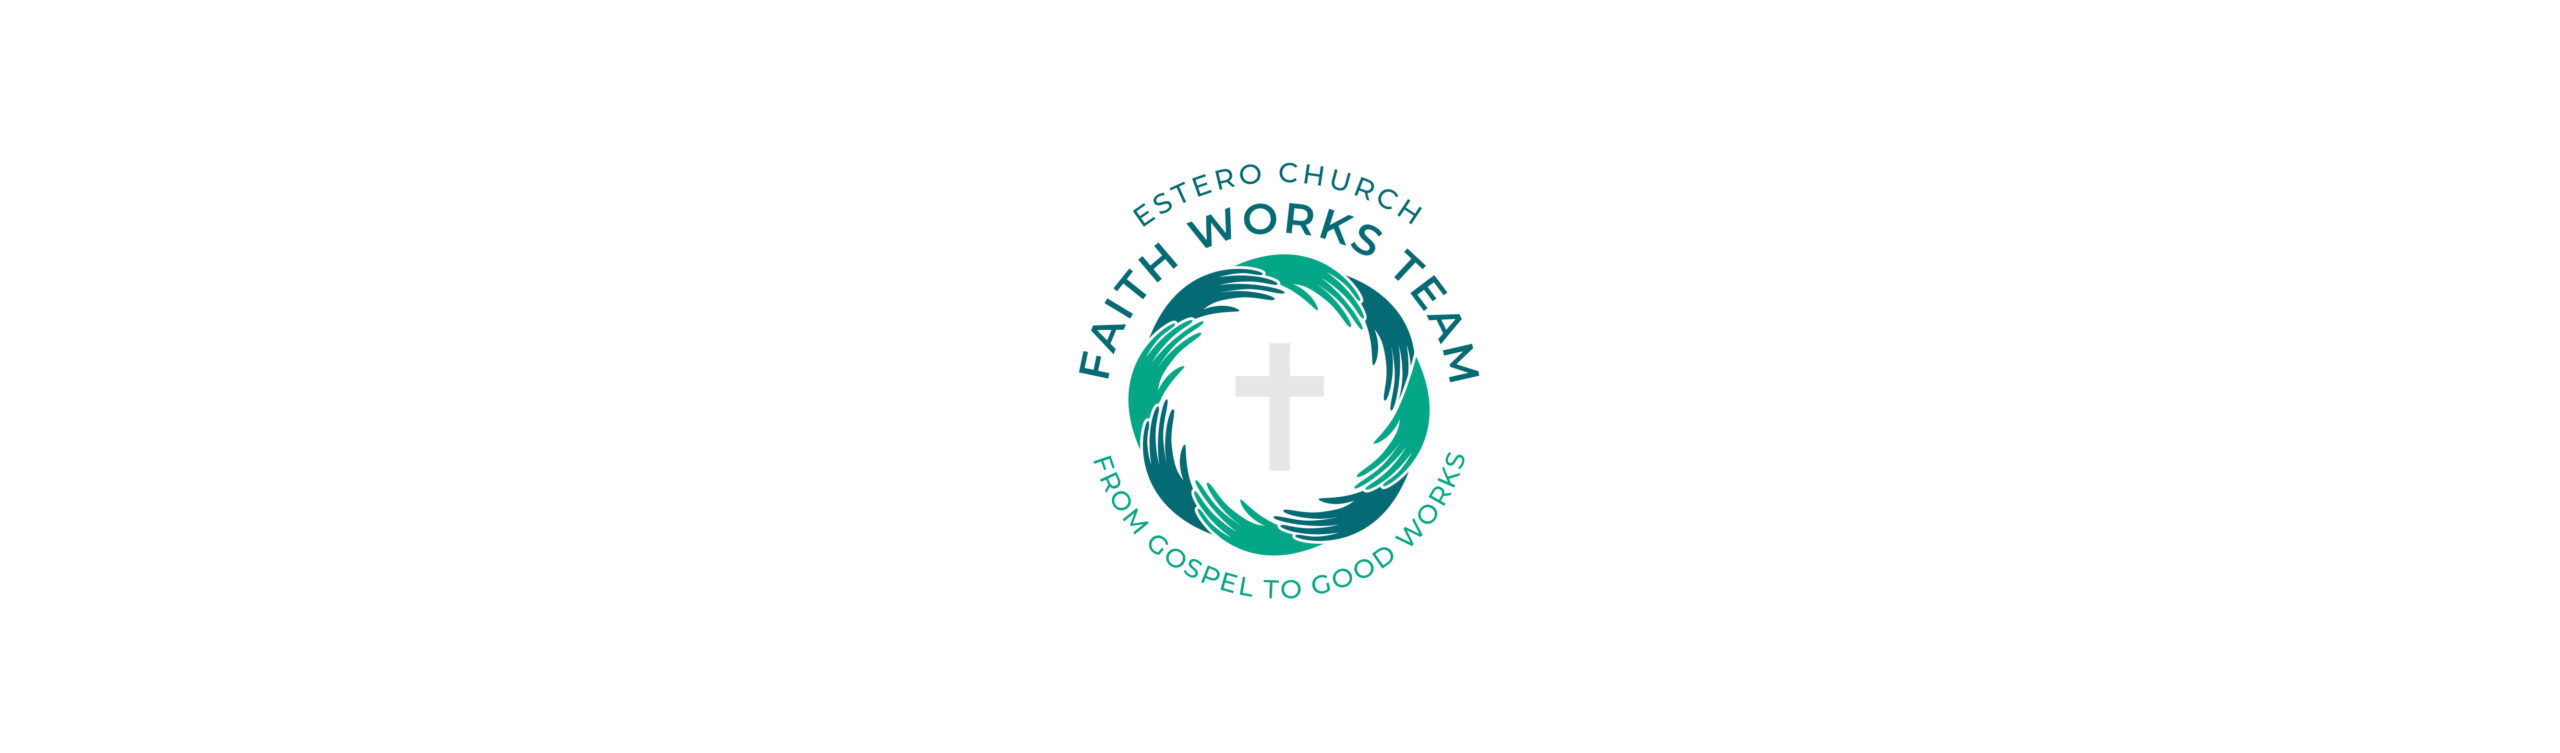 Faith Works_web